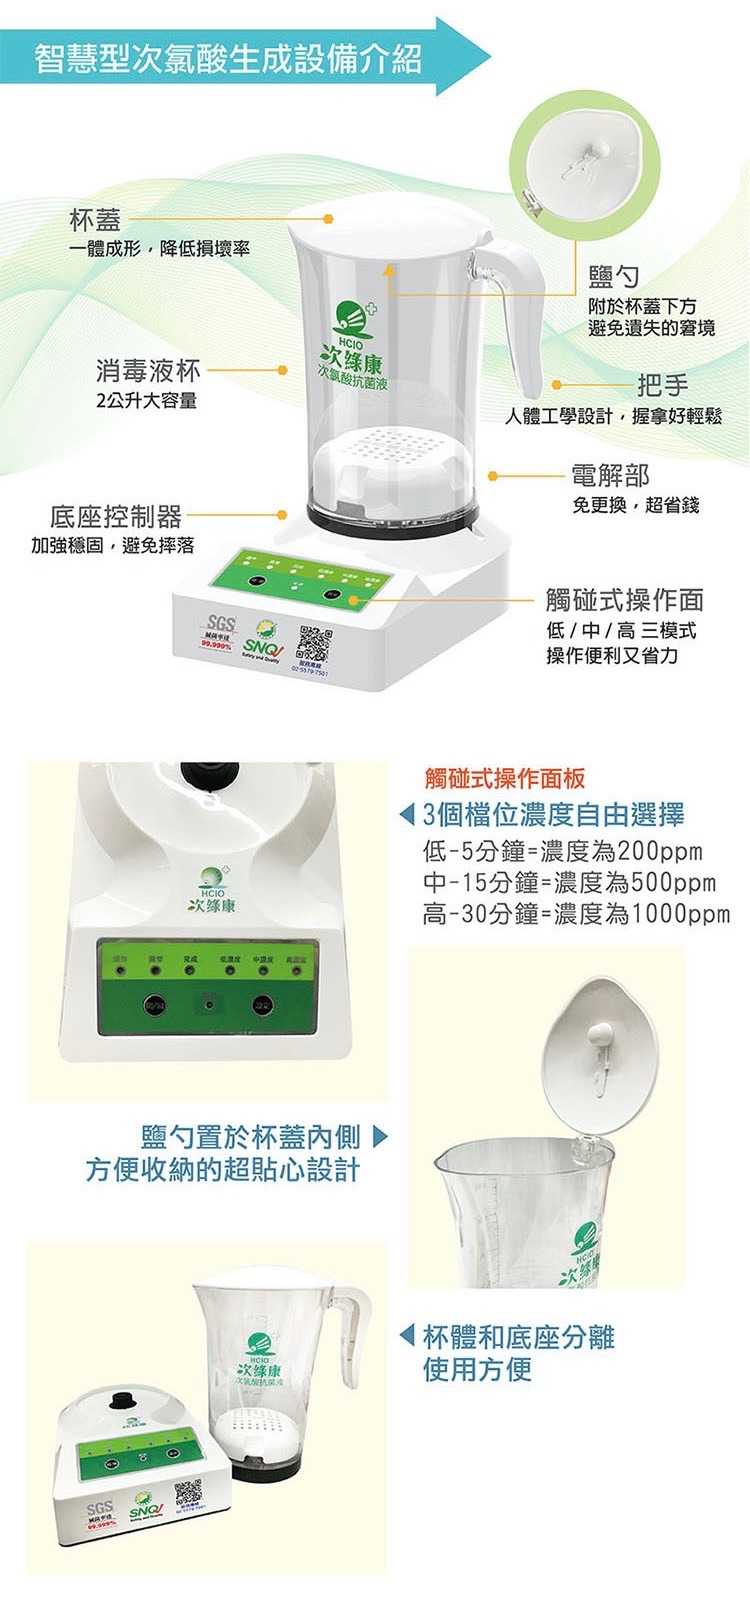 強強滾-次綠康 滅菌次氯酸水製造機 (HW-2000)